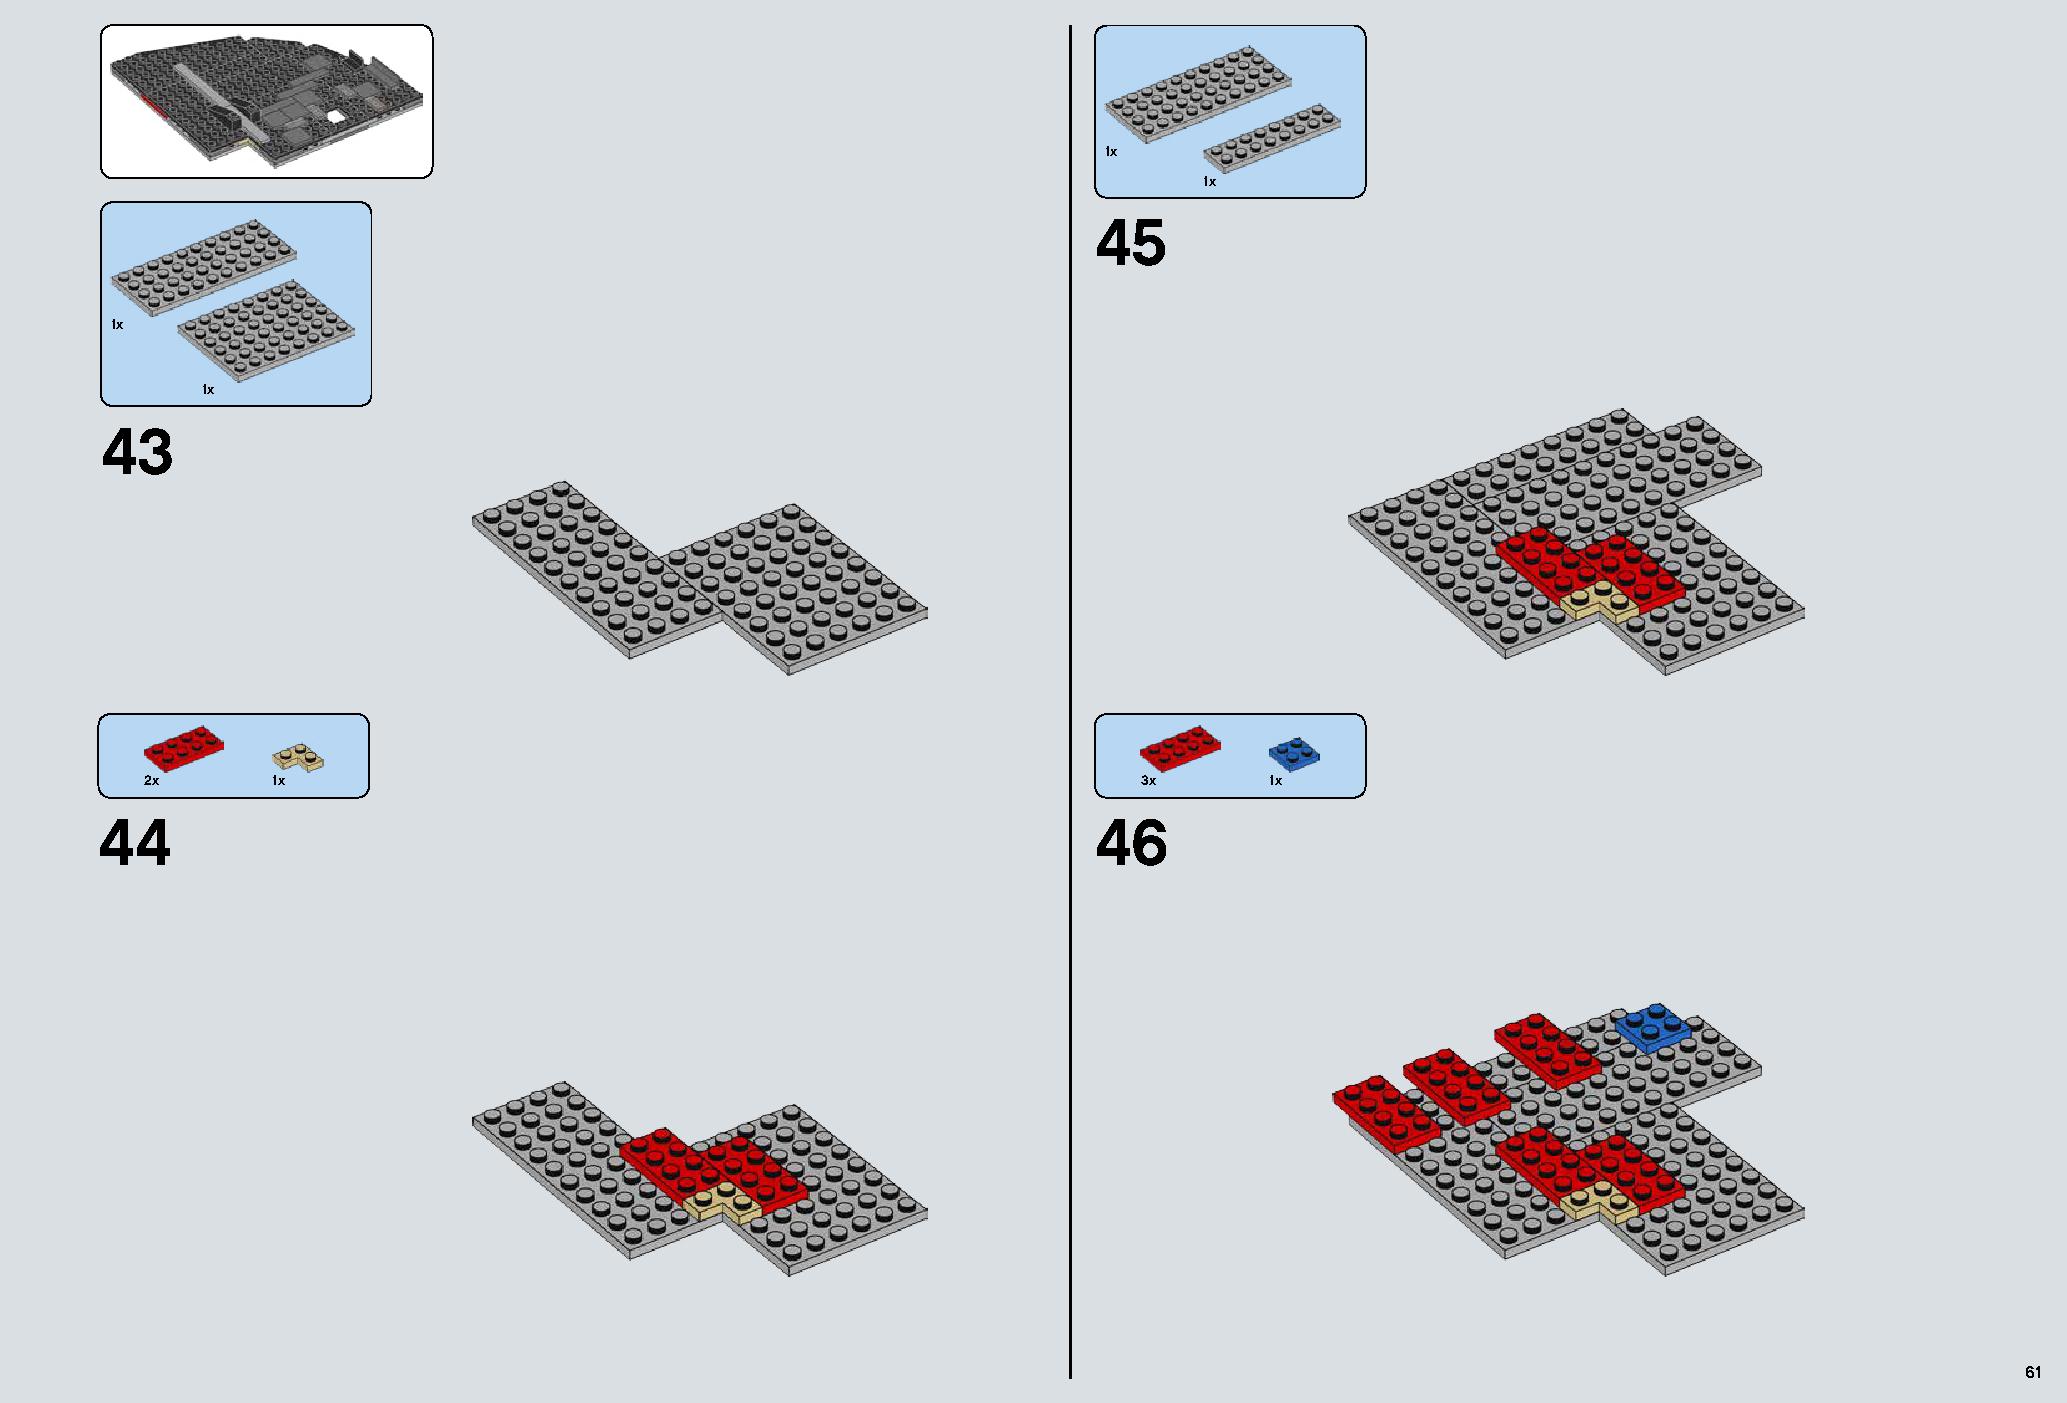 デス・スター 75159 レゴの商品情報 レゴの説明書・組立方法 61 page